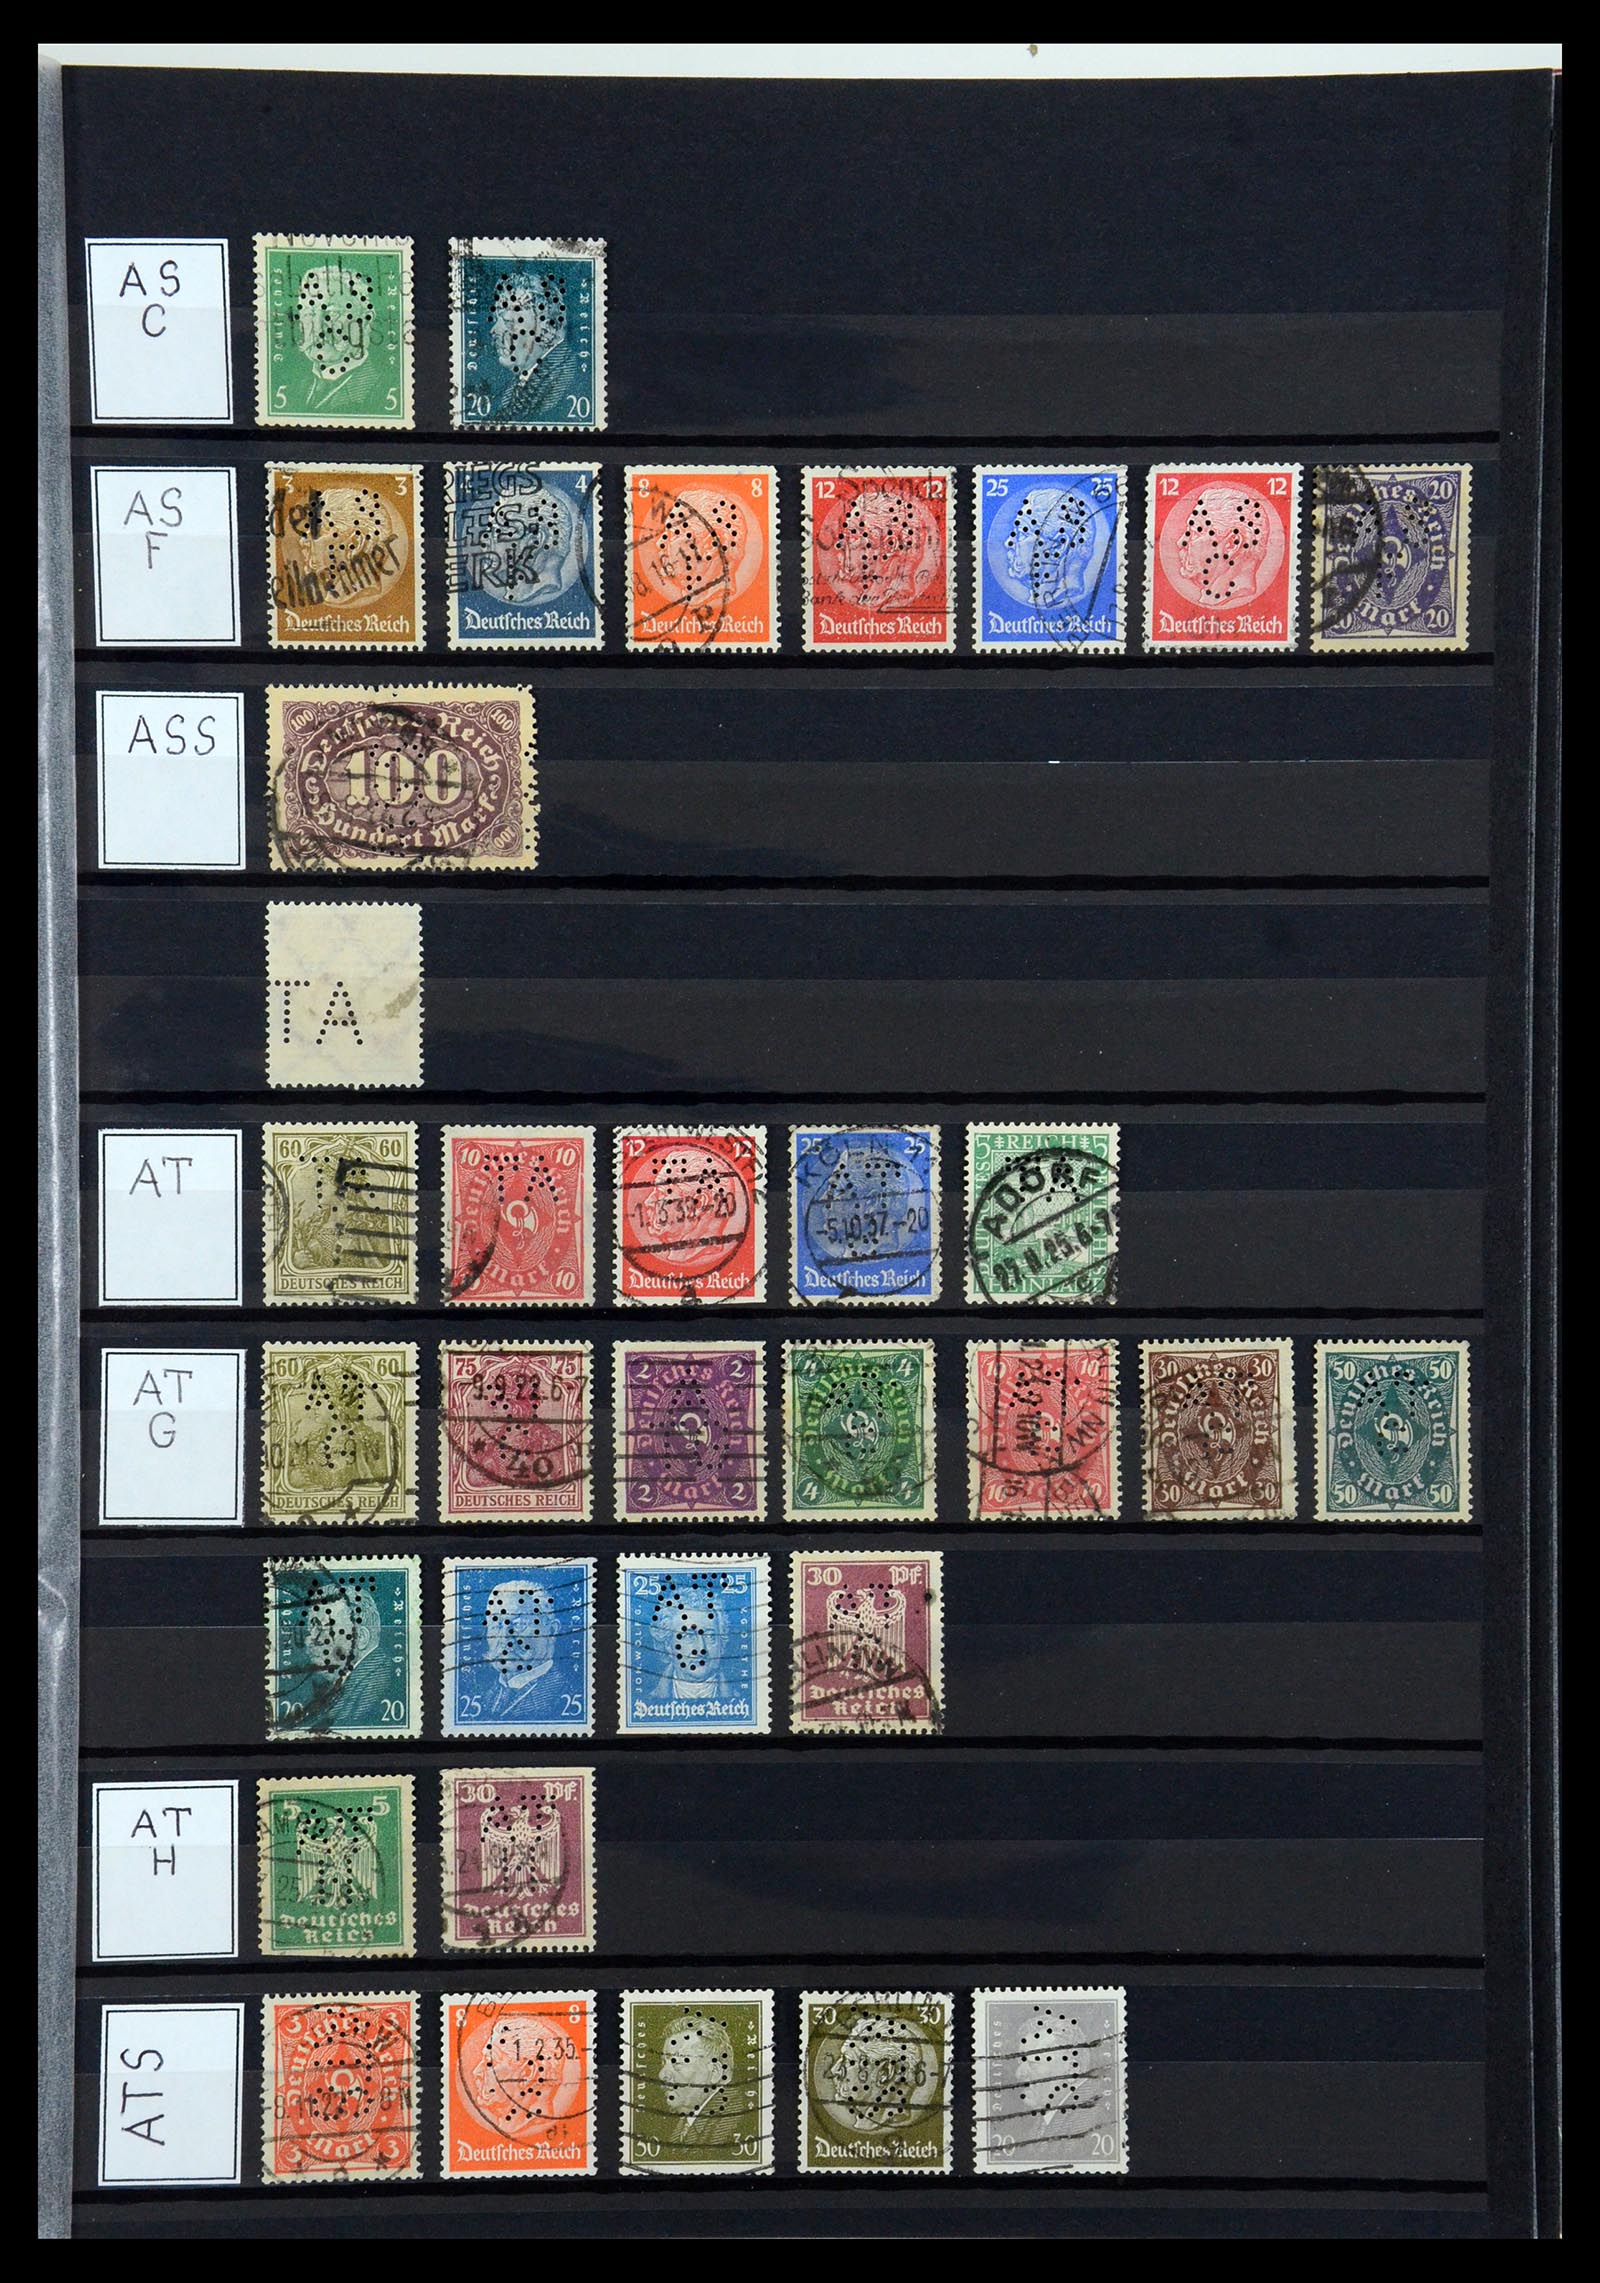 36405 027 - Stamp collection 36405 German Reich perfins 1880-1945.